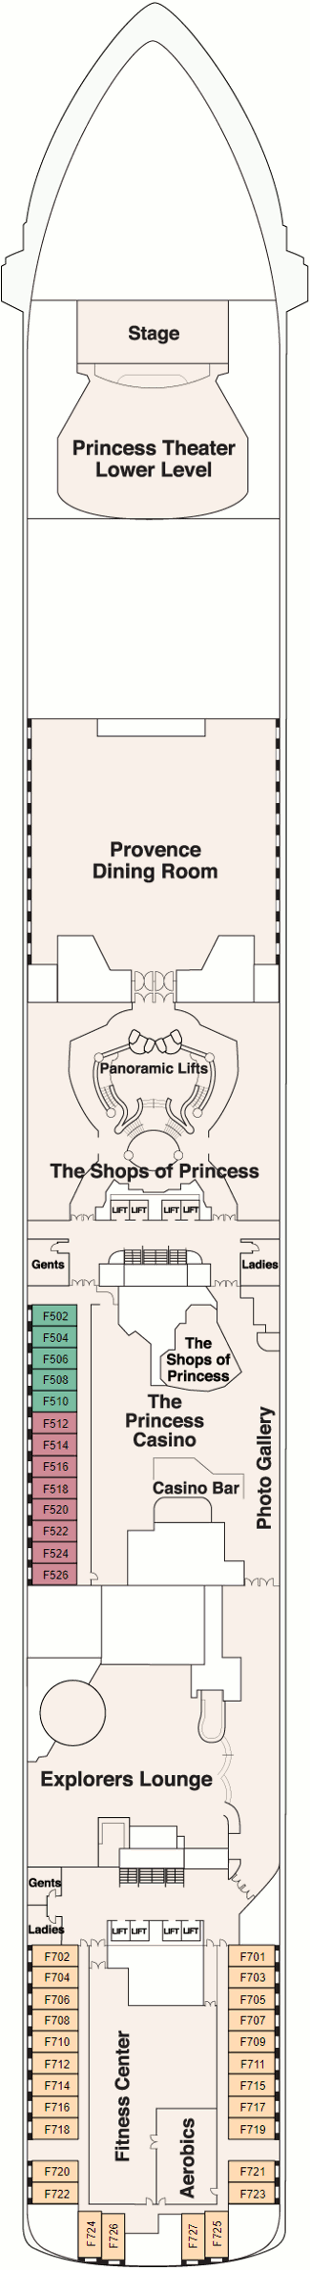 Island Princess Fiesta Deck Deck Plan